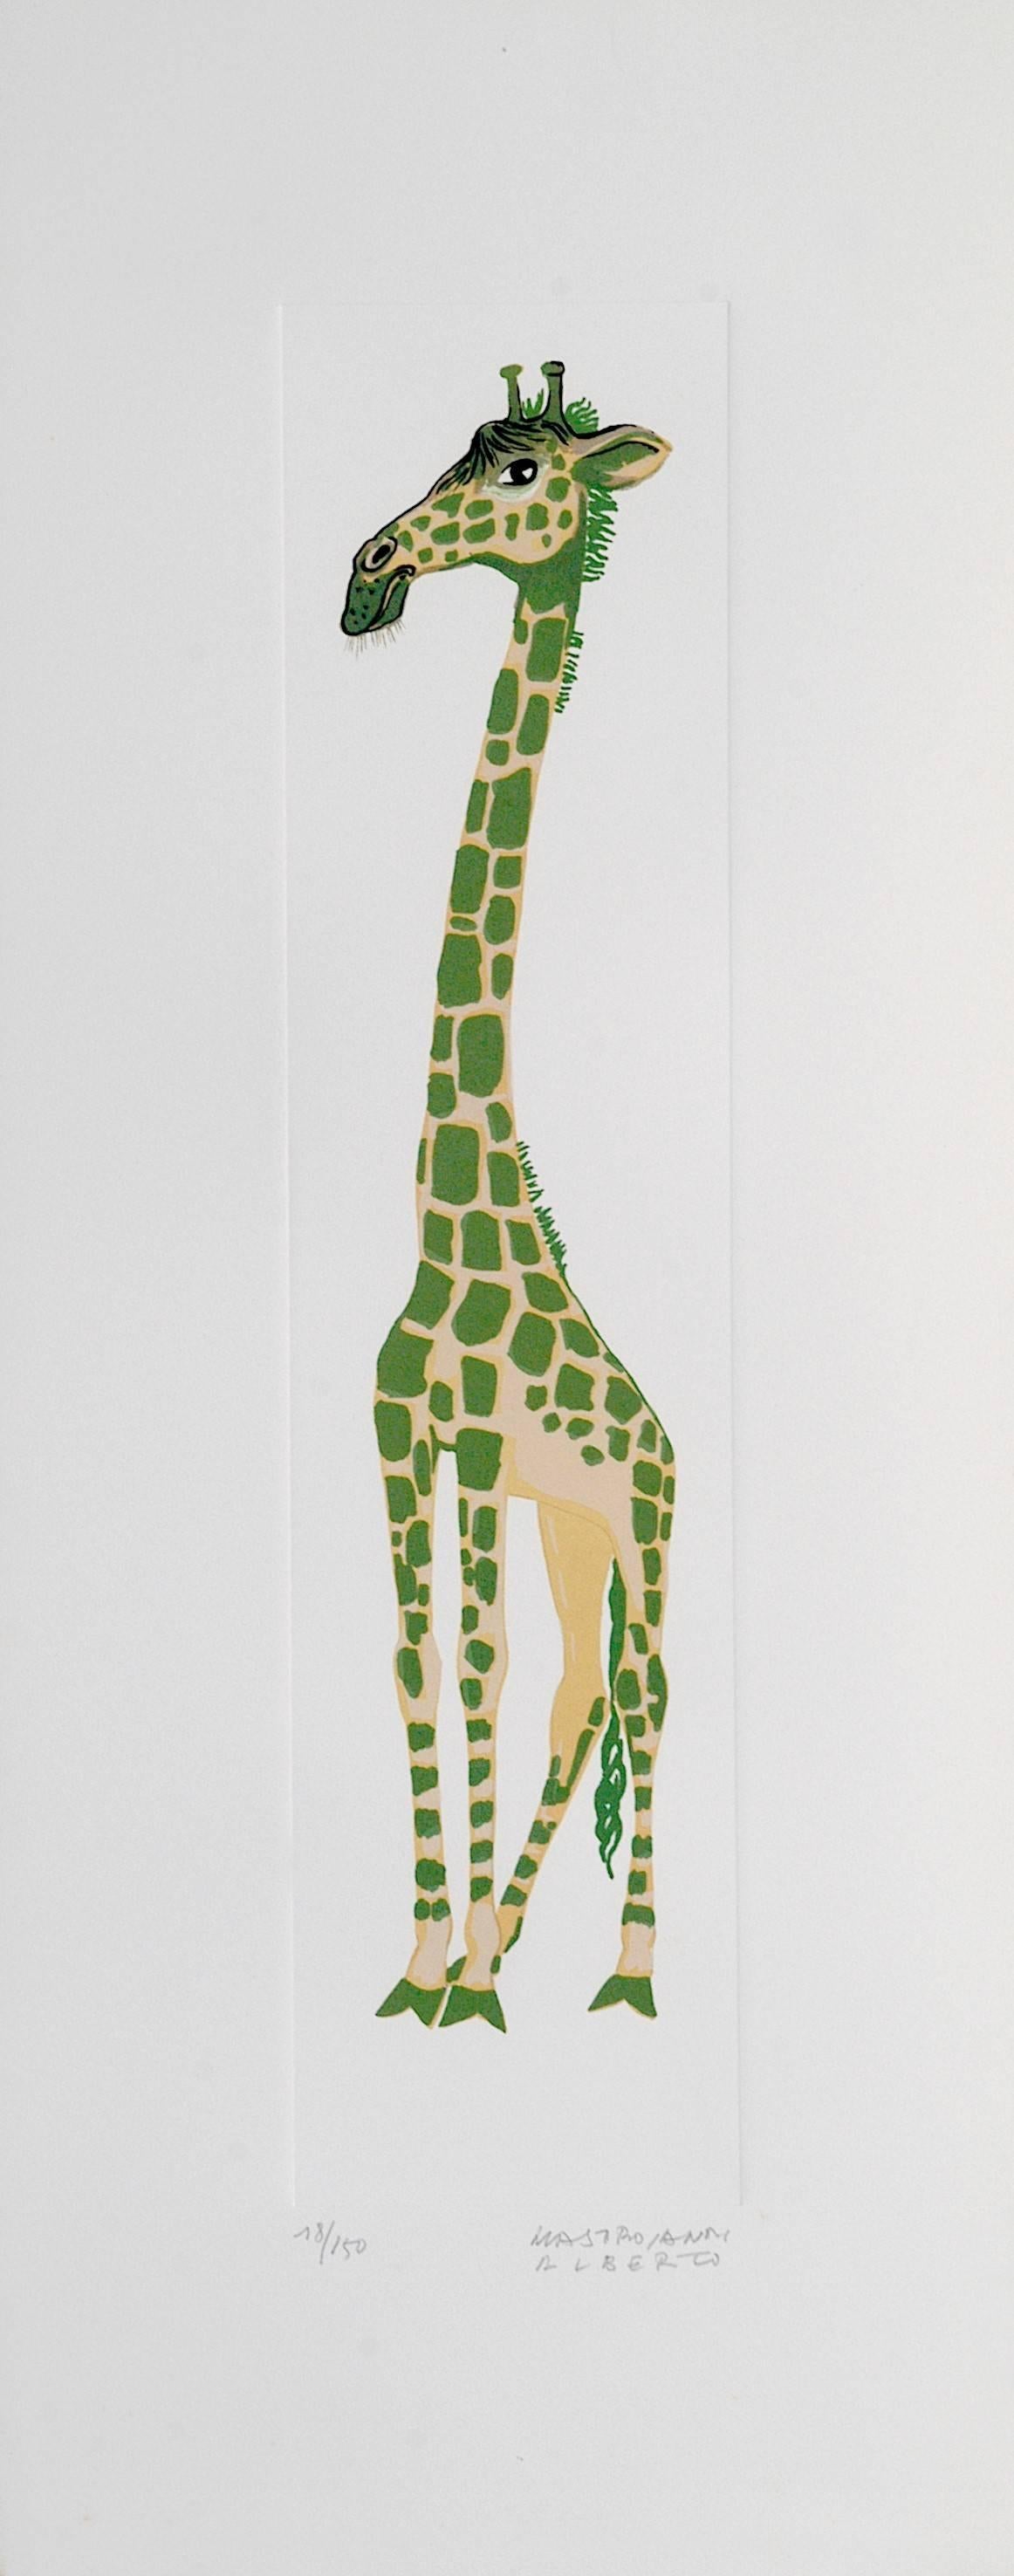 Giraffe - Original Lithograph by A. Mastroianni - 1970s